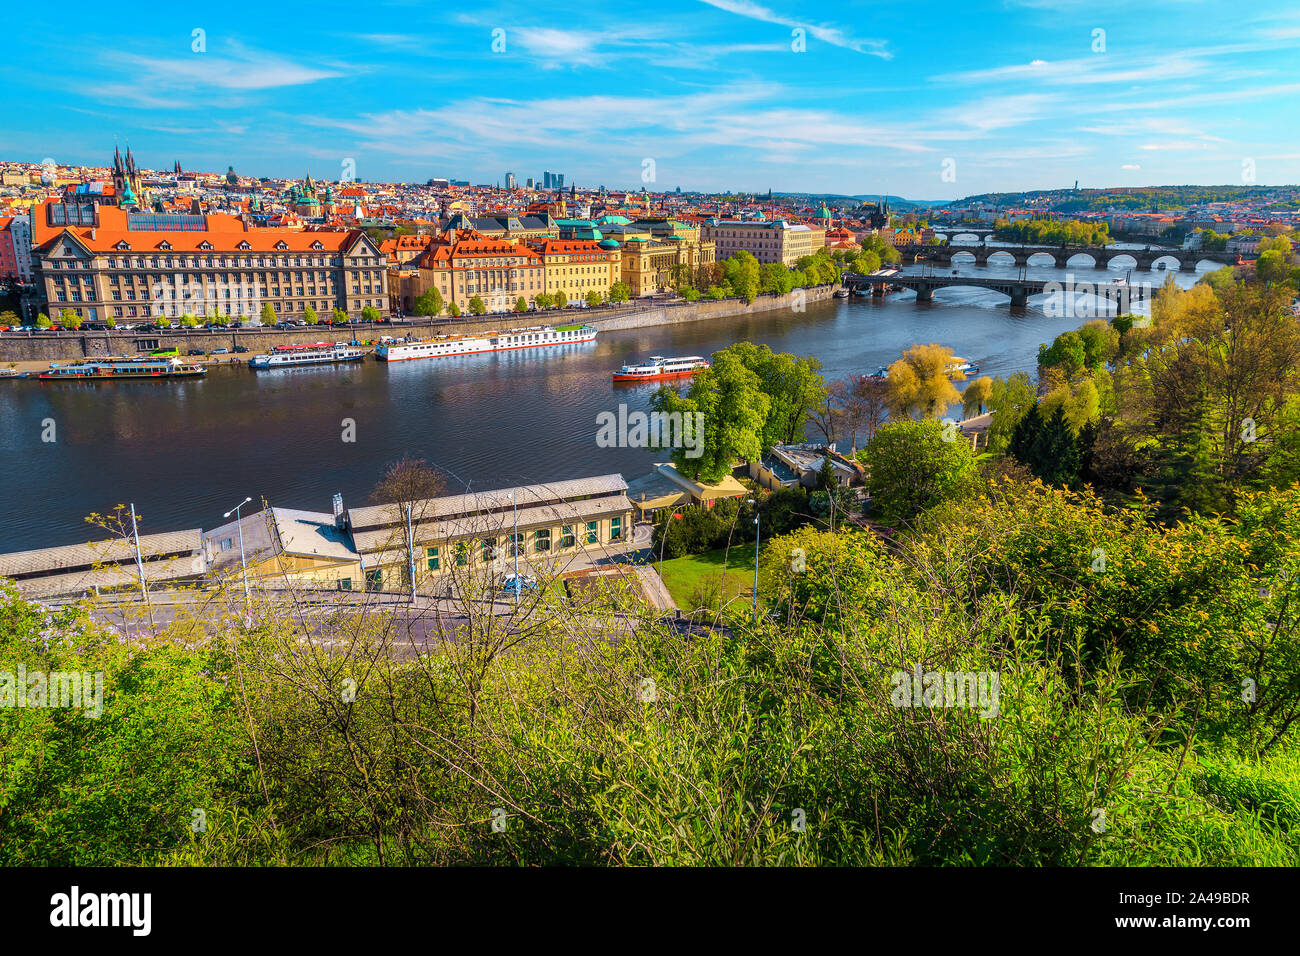 Européenne populaire ville touristique vue depuis la meilleure excursion visite place. Panorama pittoresque de la rivière Vltava et de vieux ponts célèbres, Prague, CZE Banque D'Images